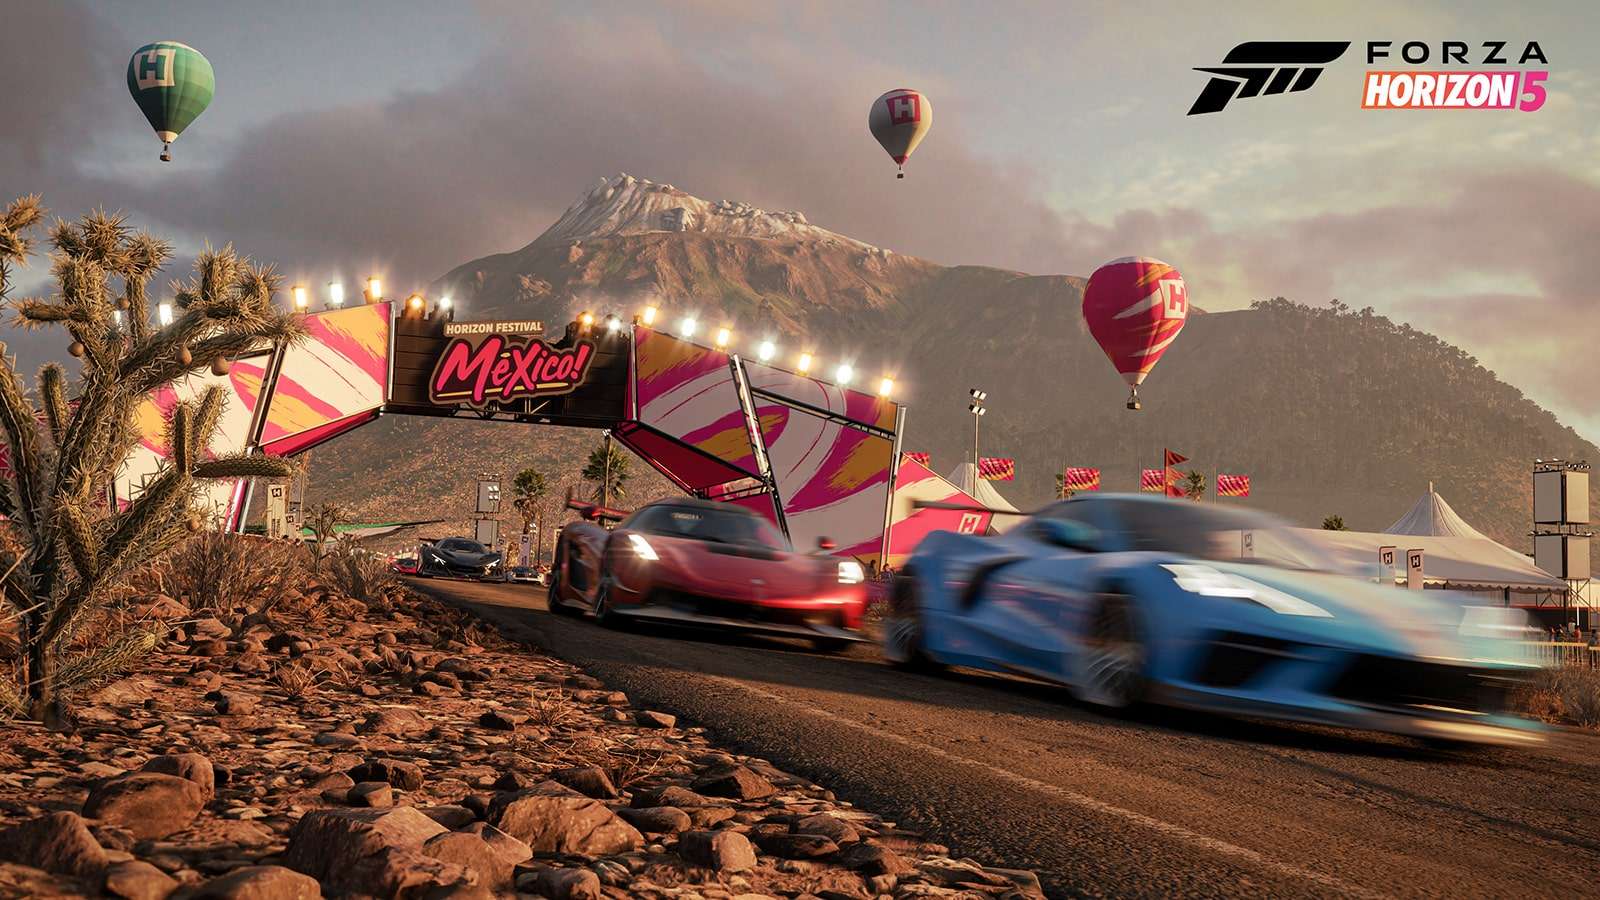 Game modes in Forza Horizon 5